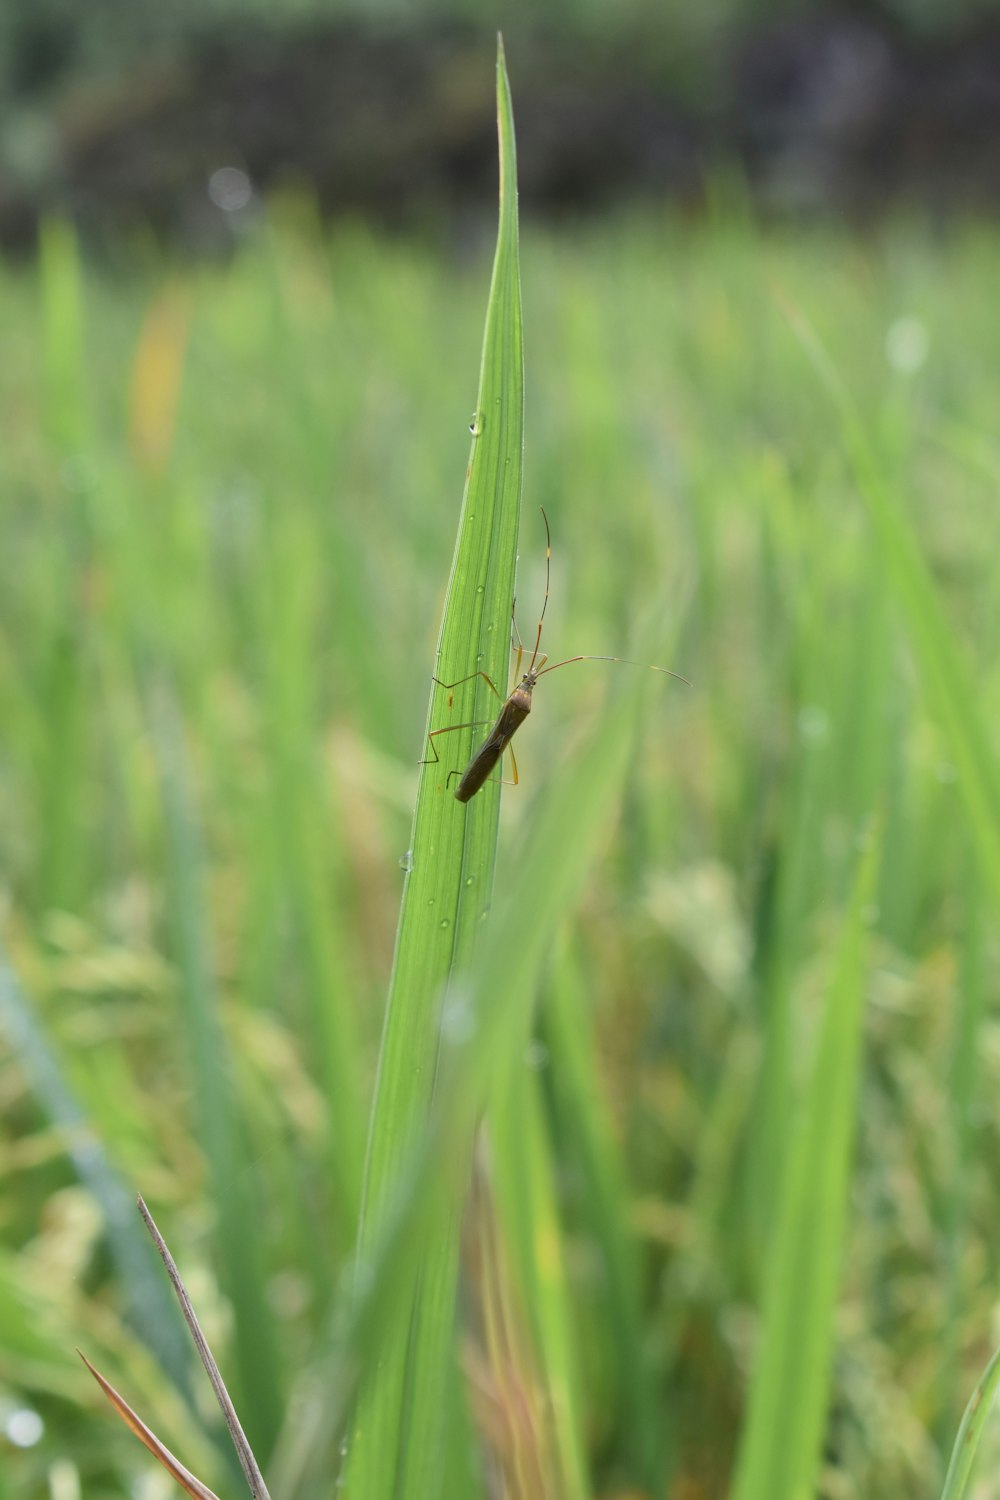 Un insecto está sentado en una brizna de hierba